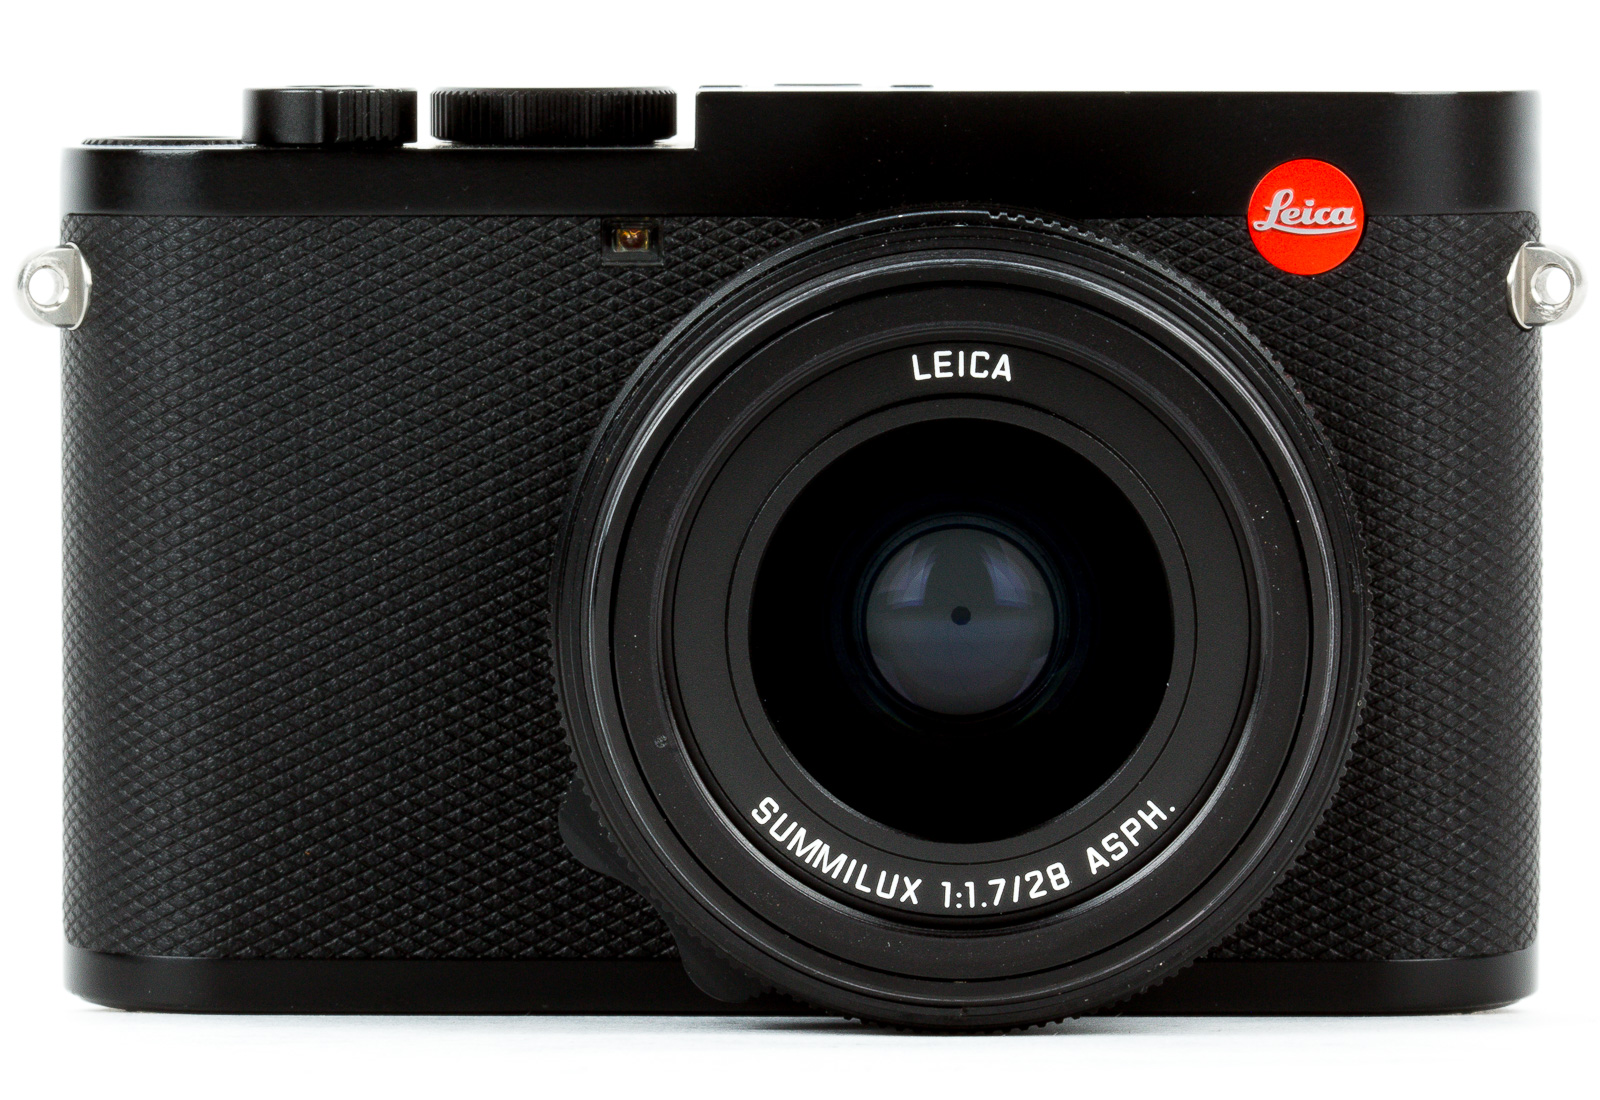 Image of Leica Q2